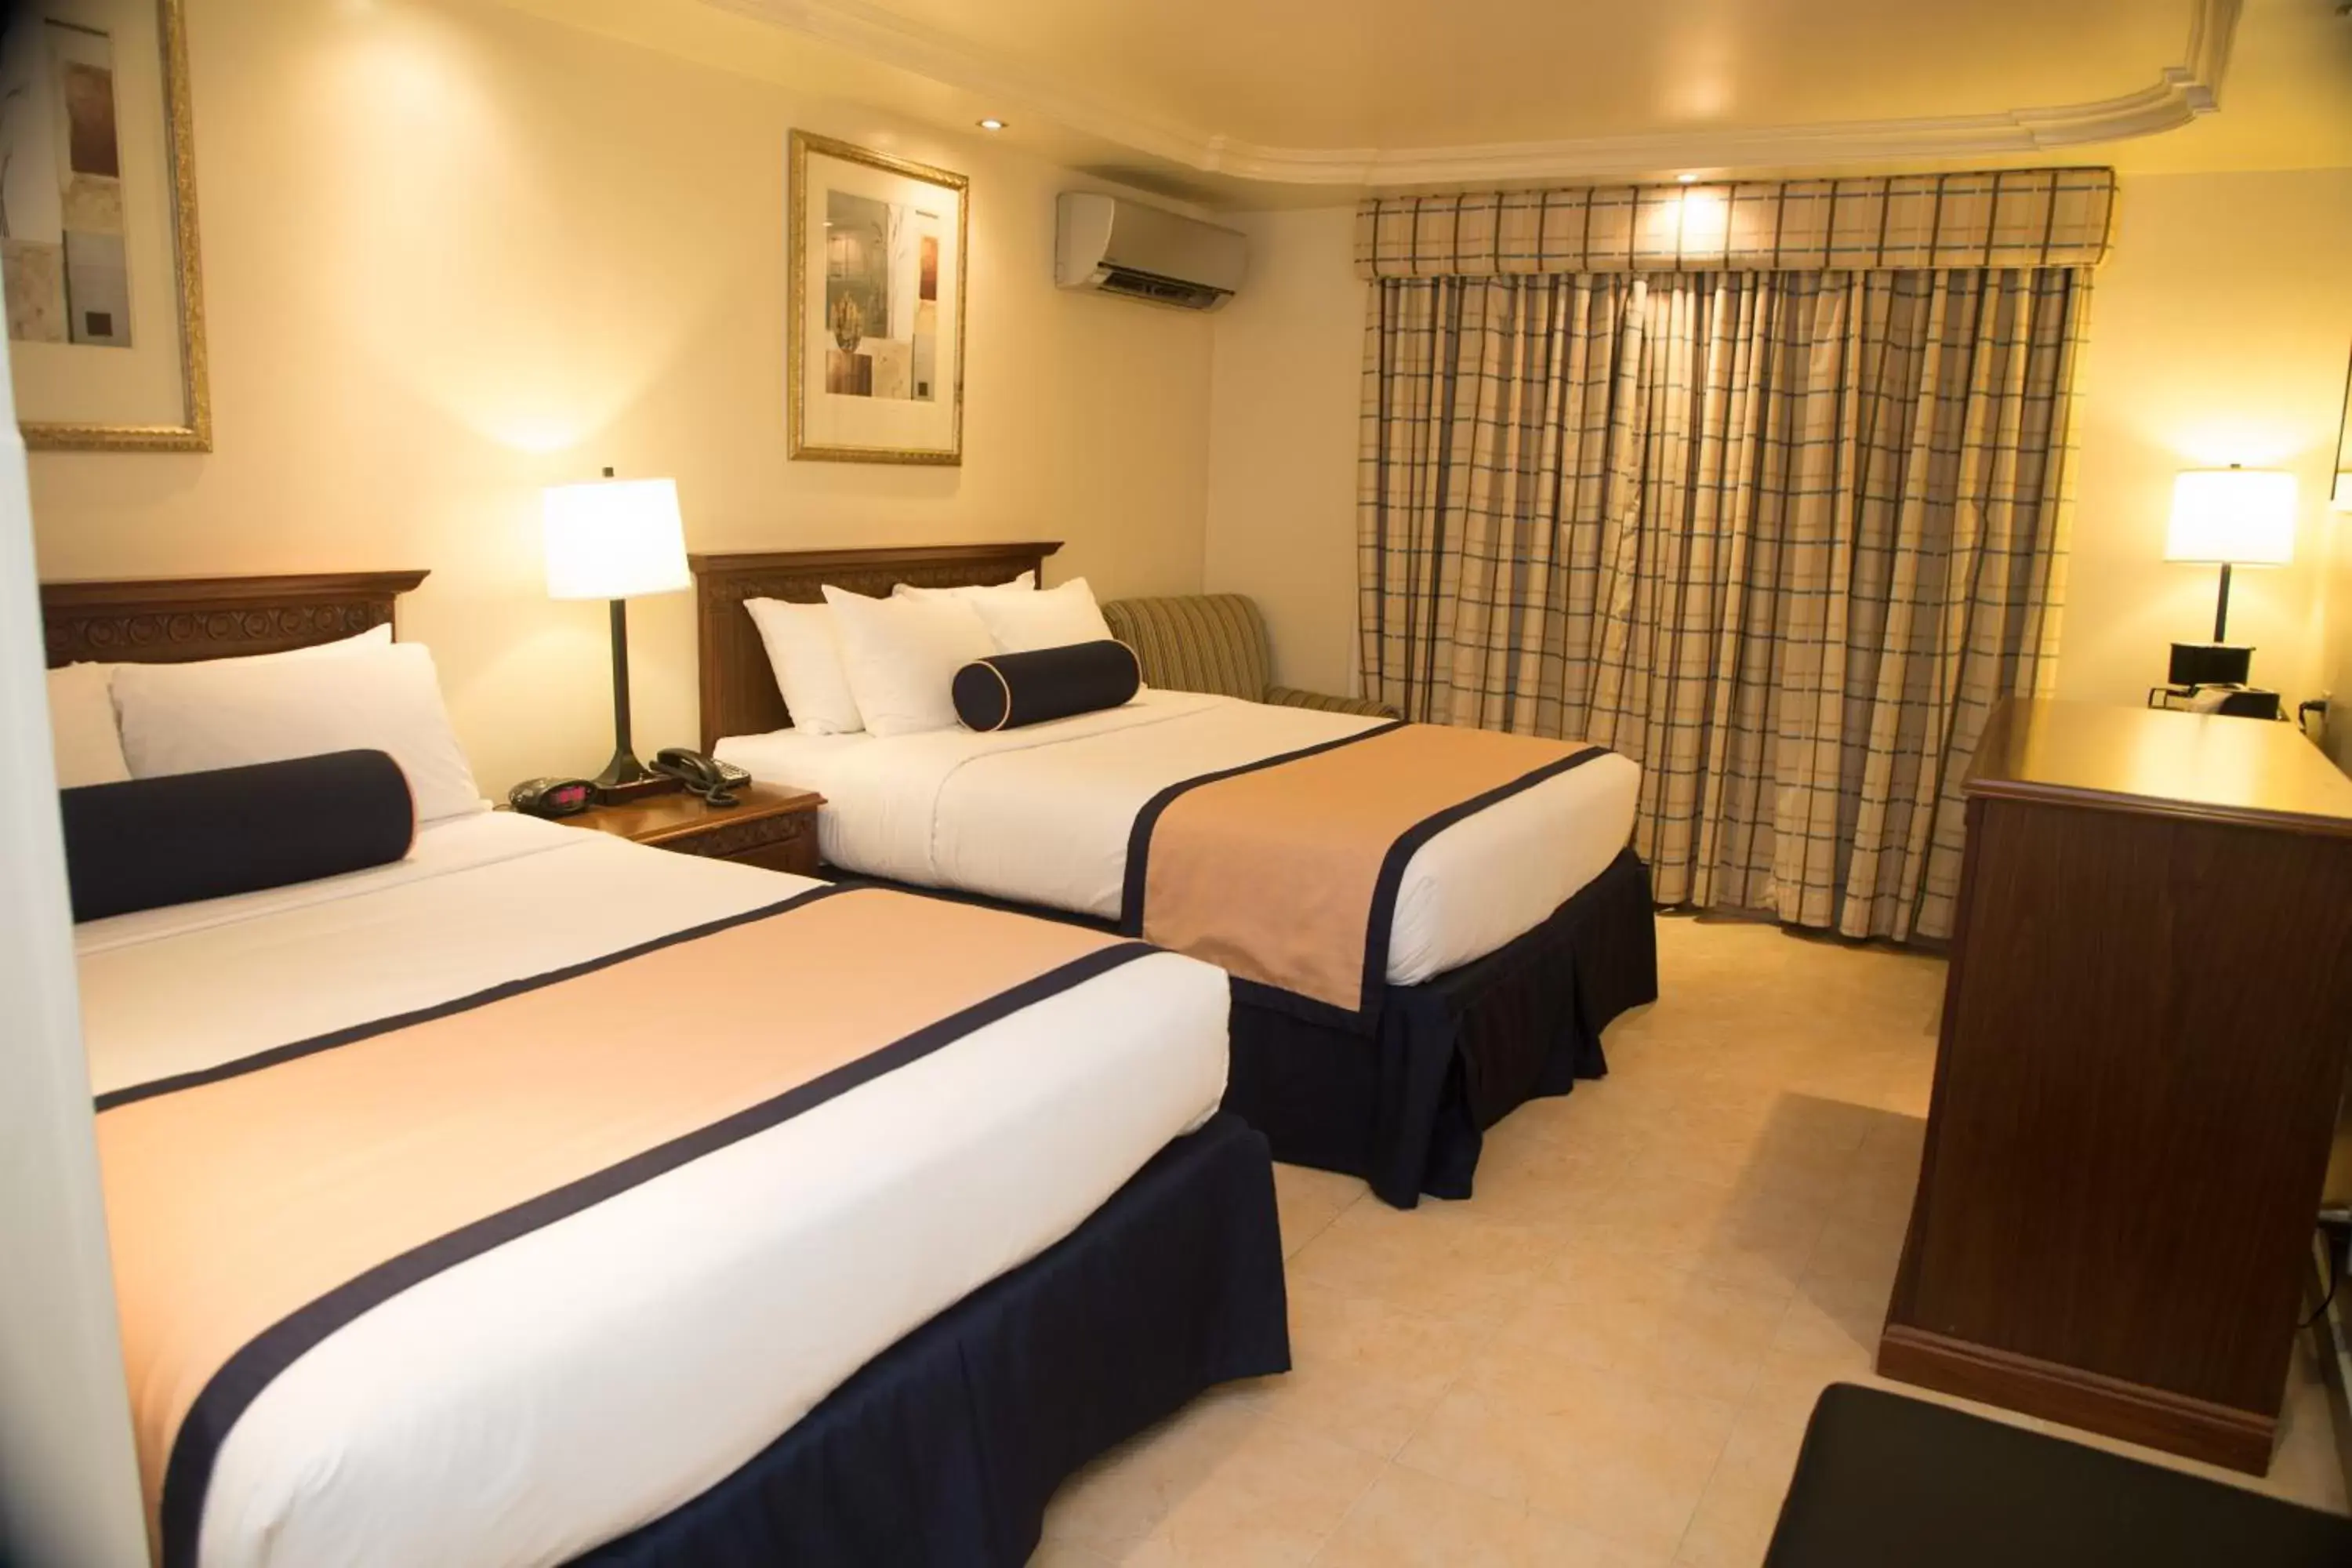 Area and facilities, Bed in Best Western El Dorado Panama Hotel